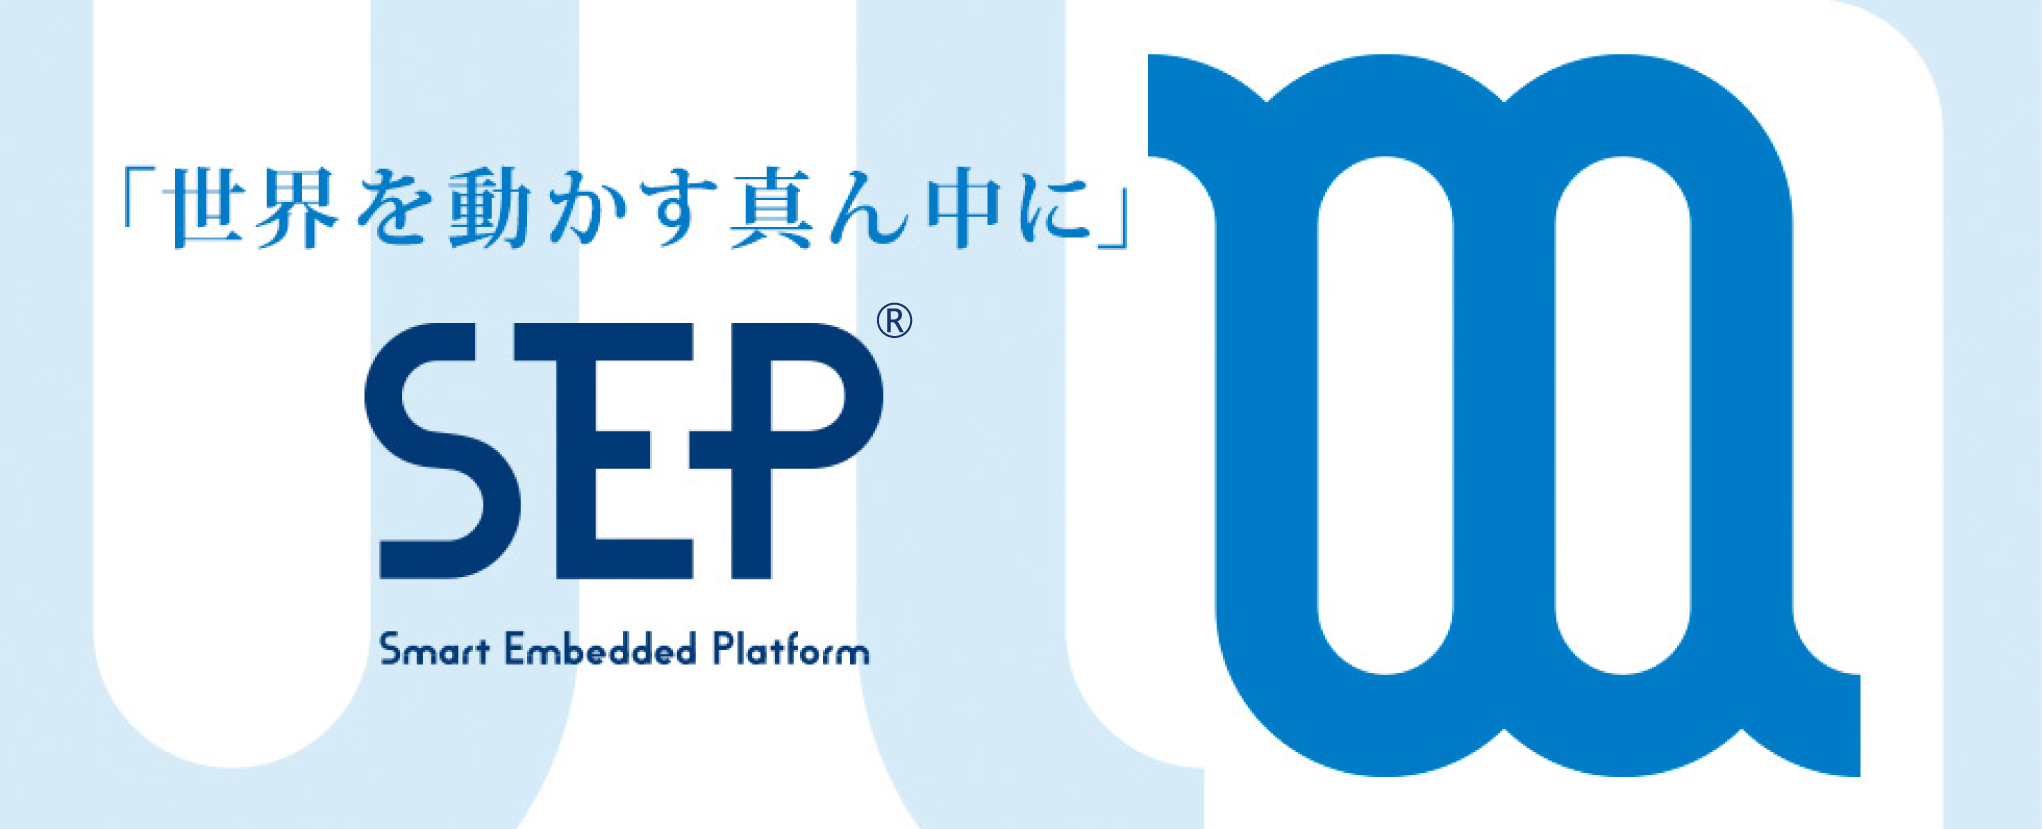 SEP（Smart Embedded Platform）